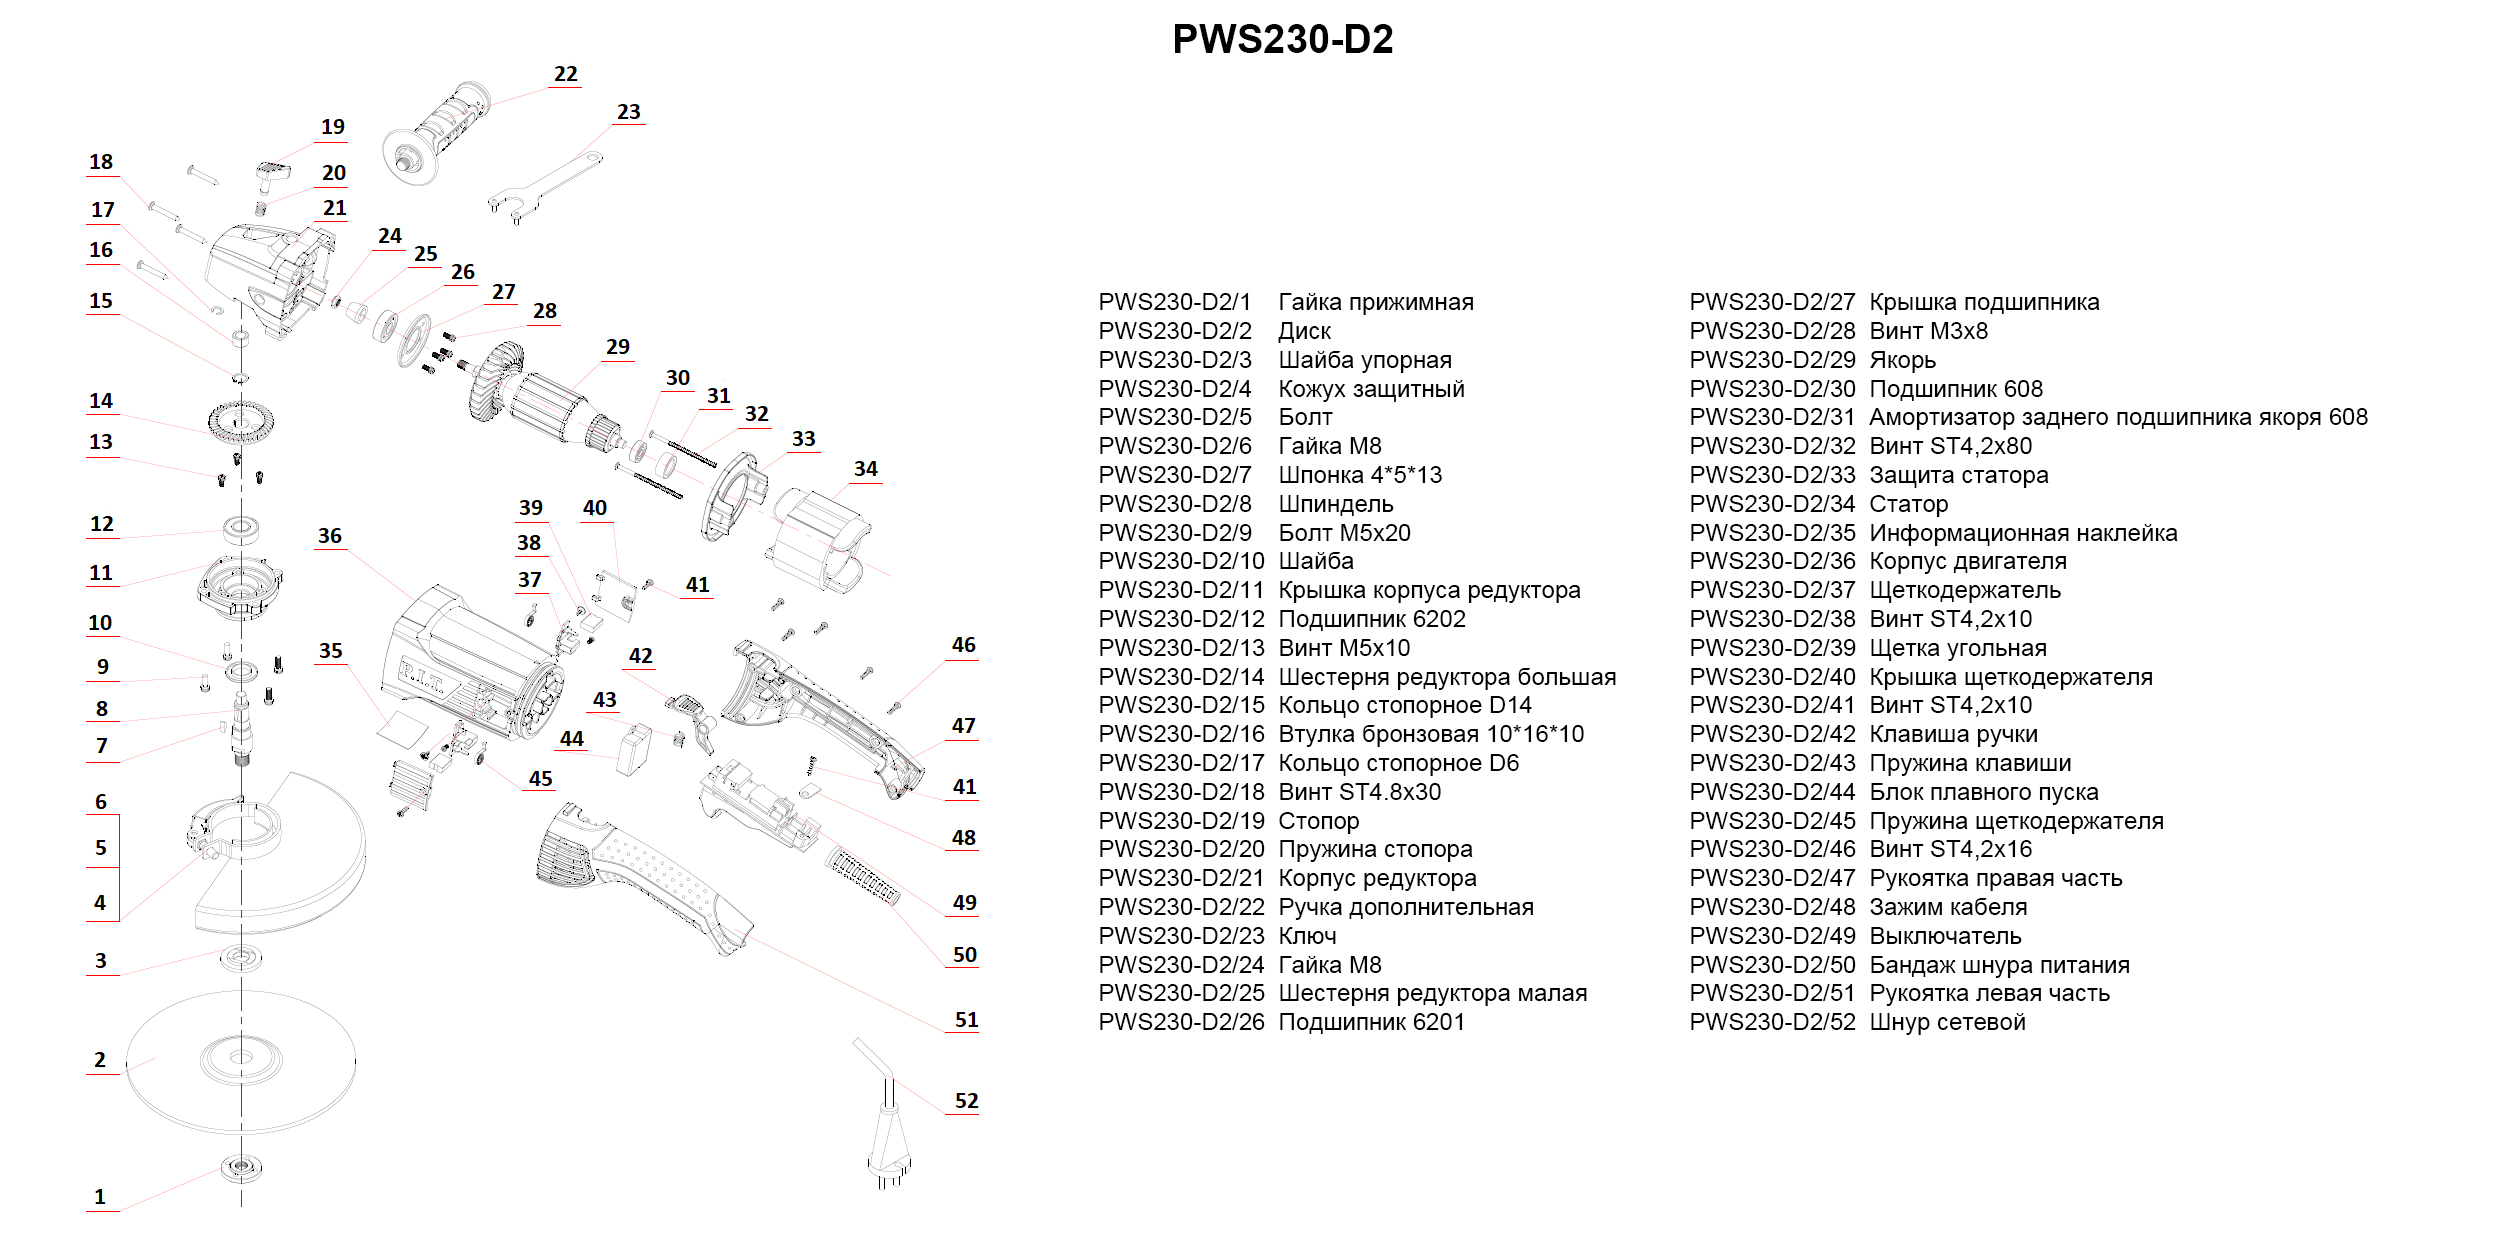 Запчасти, схема и деталировка УШМ P.I.T. PWS230-D2  СТАНДАРТ